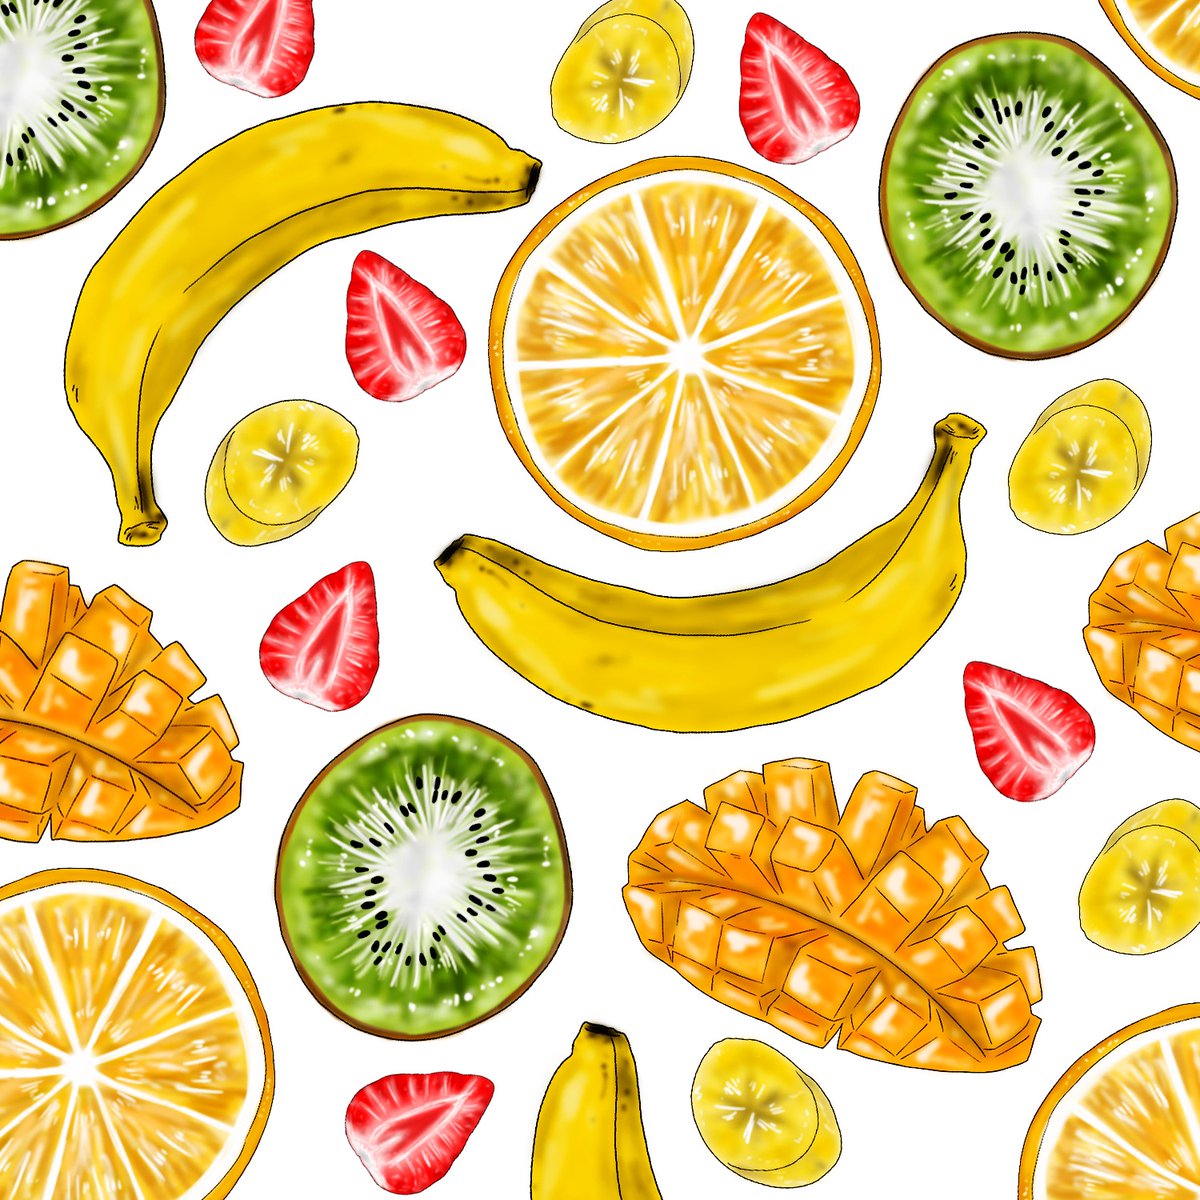 Moe On Twitter 断面図良き フルーツ 断面図 果物 果物イラスト 絵 イラストレーション マンゴー イチゴ バナナ キウイ フルーツ柄 お絵かき デザイナー Fruits Fruitsillustration Illustration Delicious Mango Kiwi Strawberry Banana